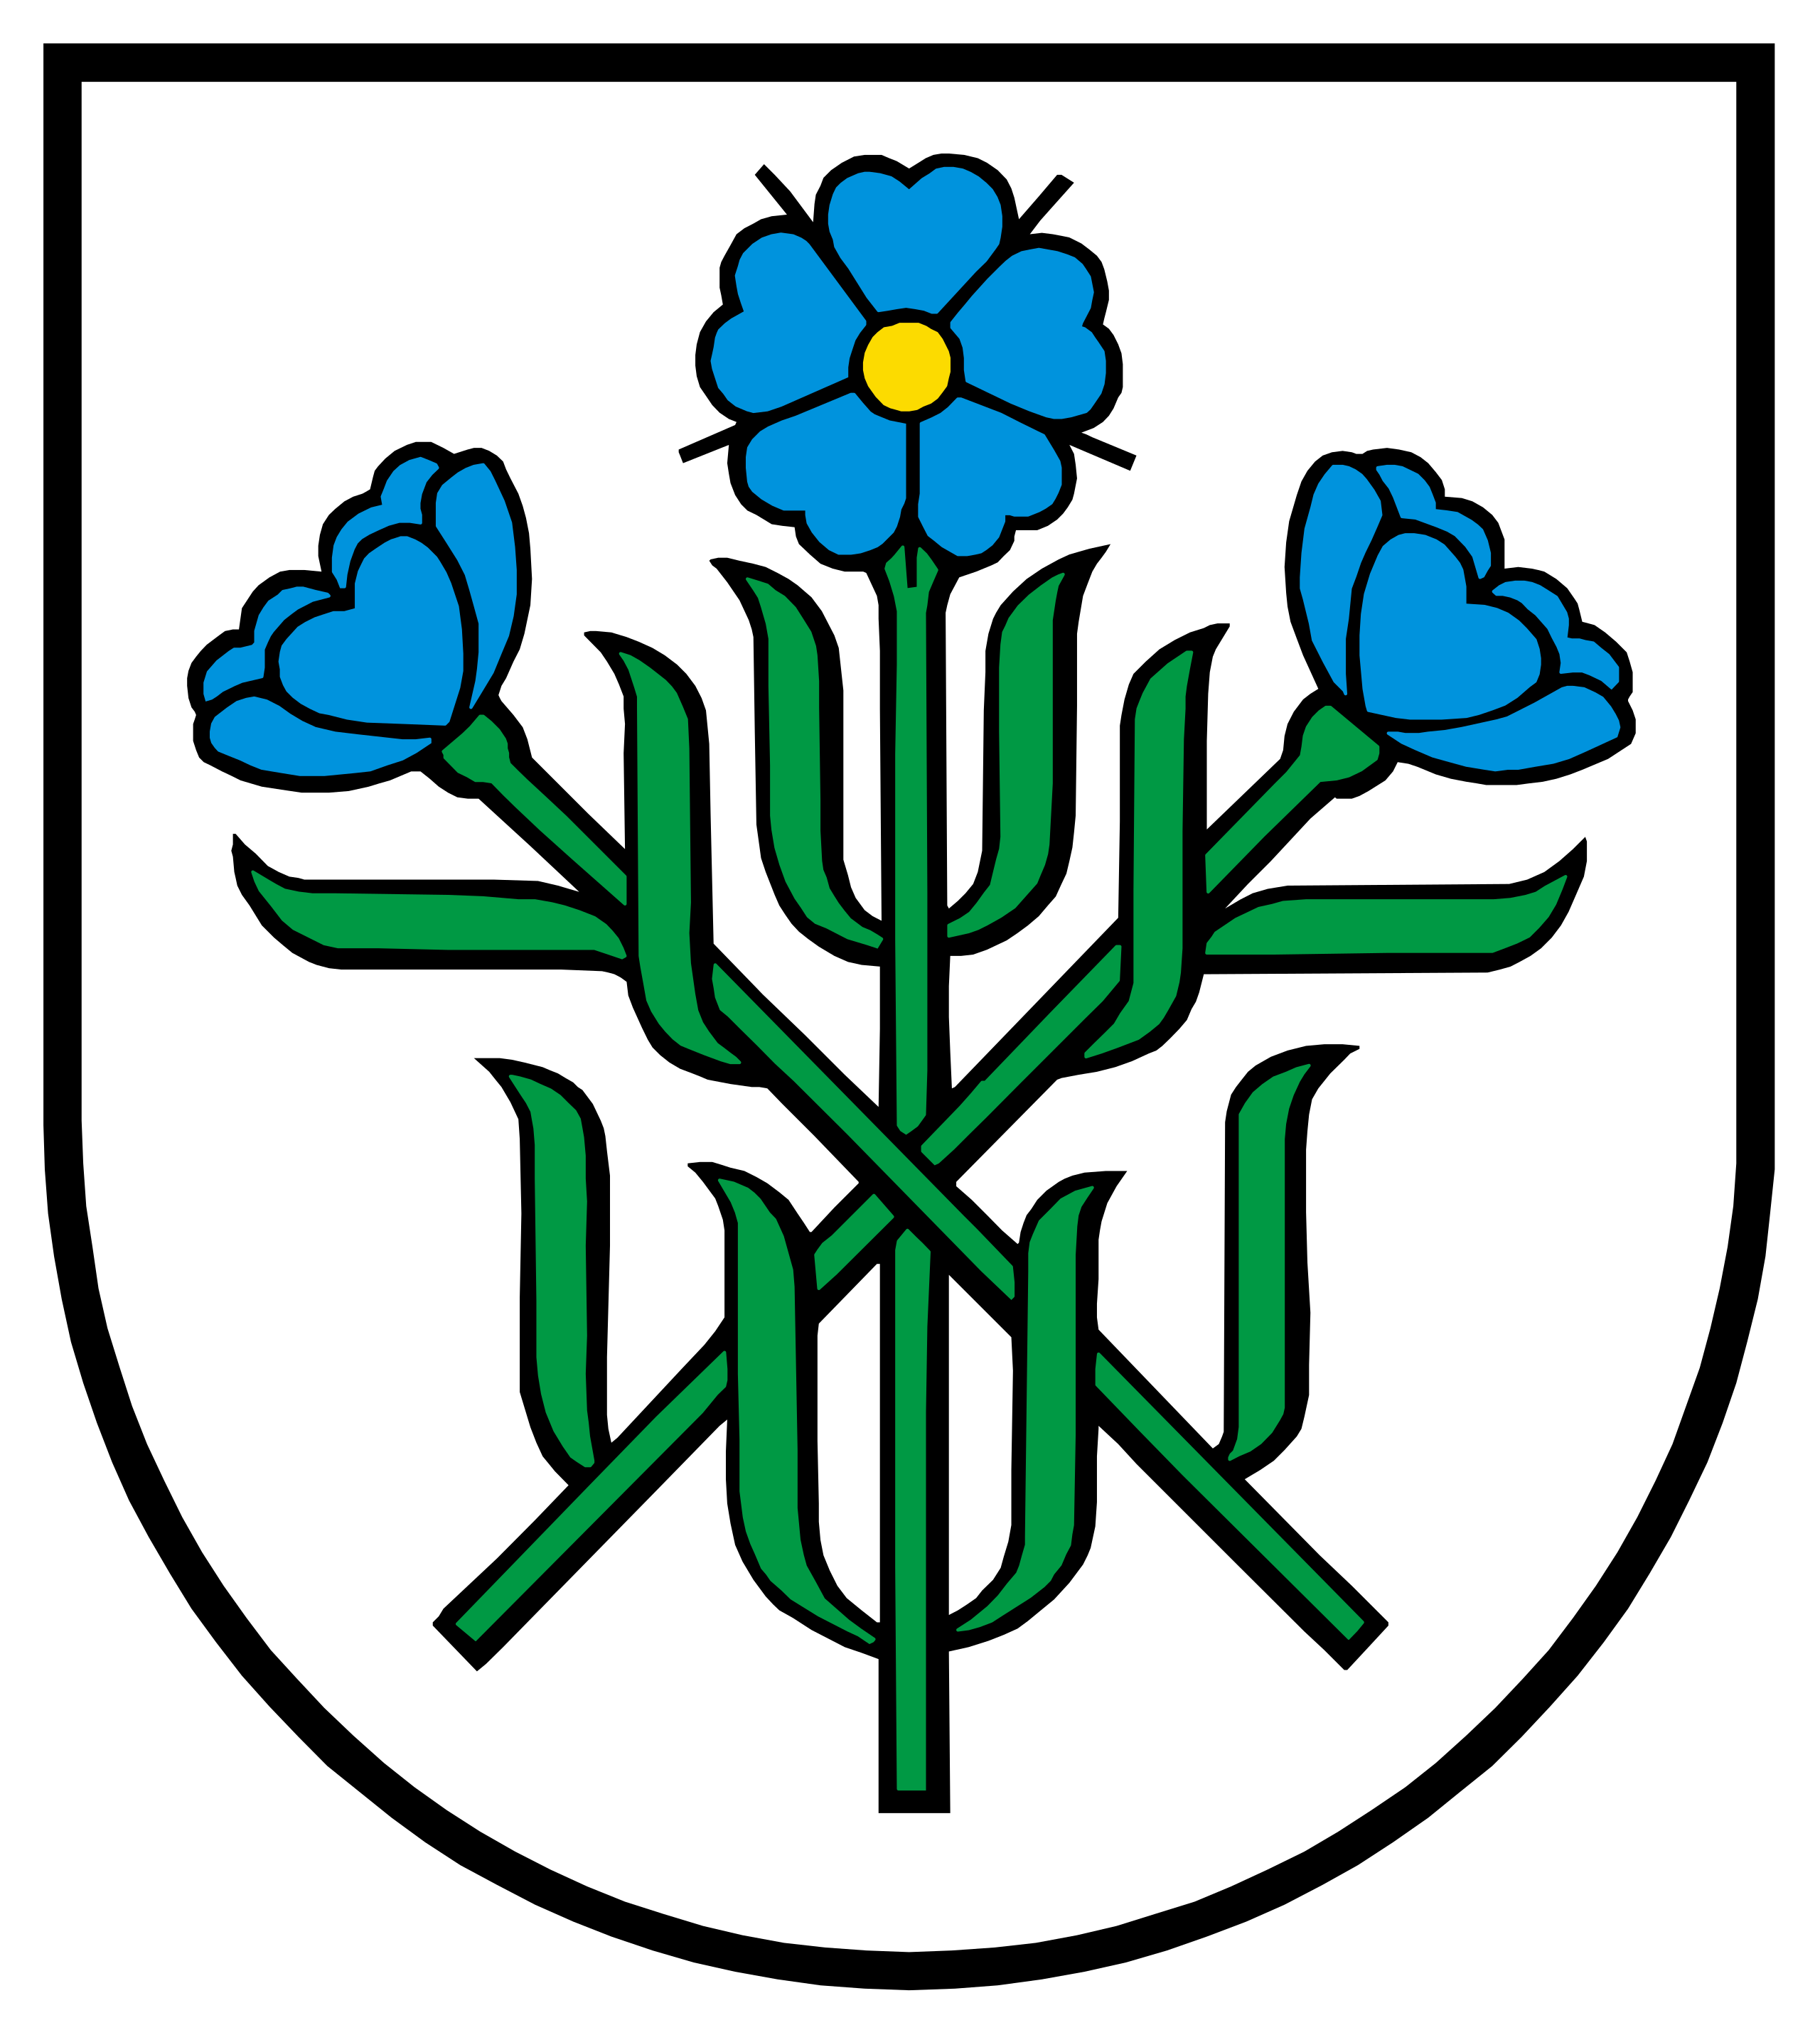 Wappen Gemeinde Oberflachs im Kanton Argau/Schweiz